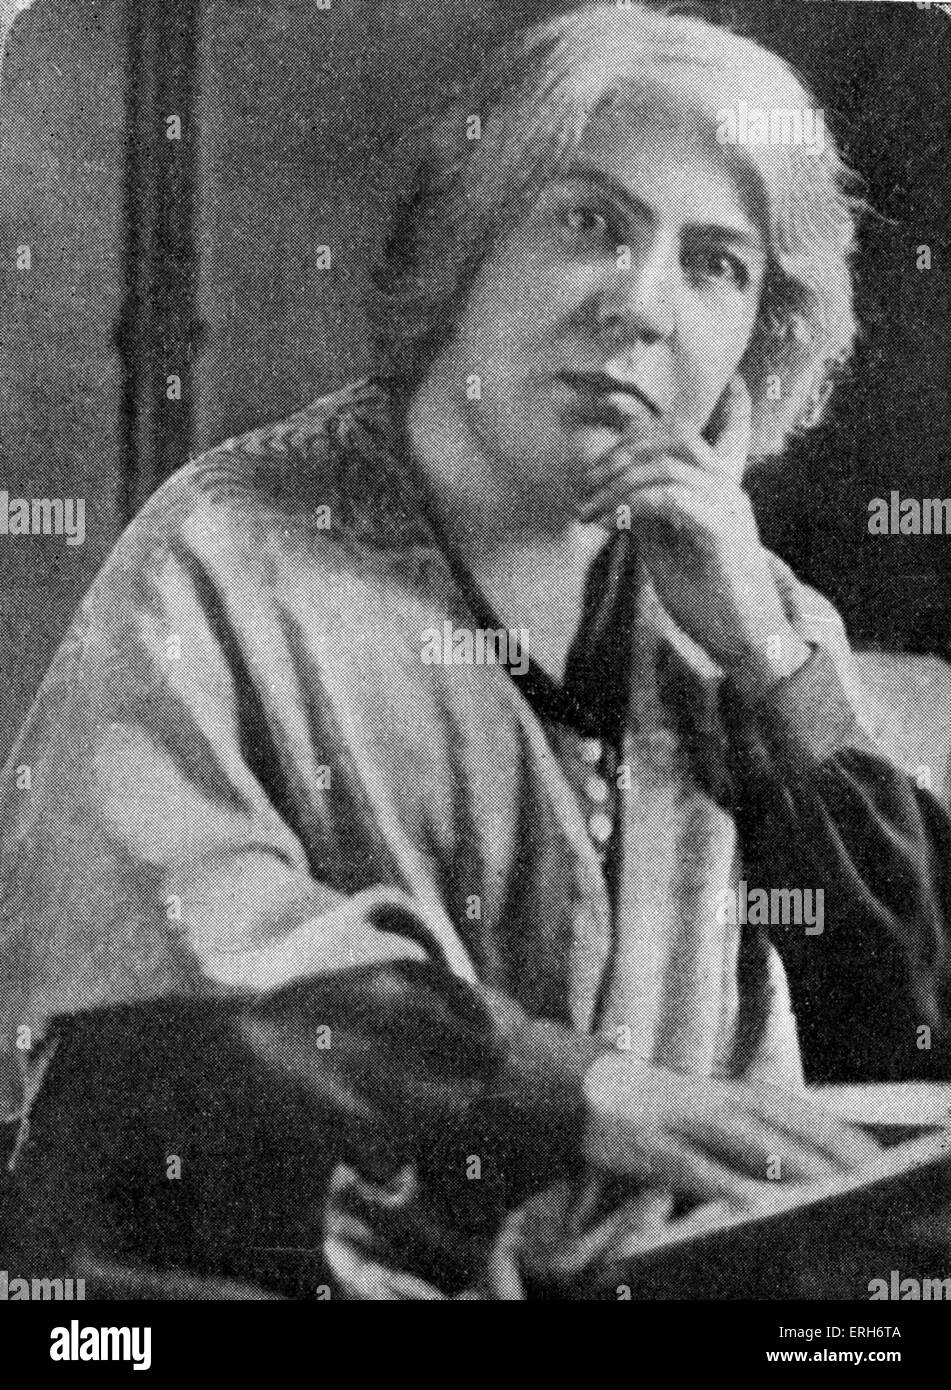 Grazia Deledda - portrait. Auteur italien, reçoit le Prix Nobel de Littérature en 1926. 27 septembre 1871 - 15 août, 1936 Banque D'Images